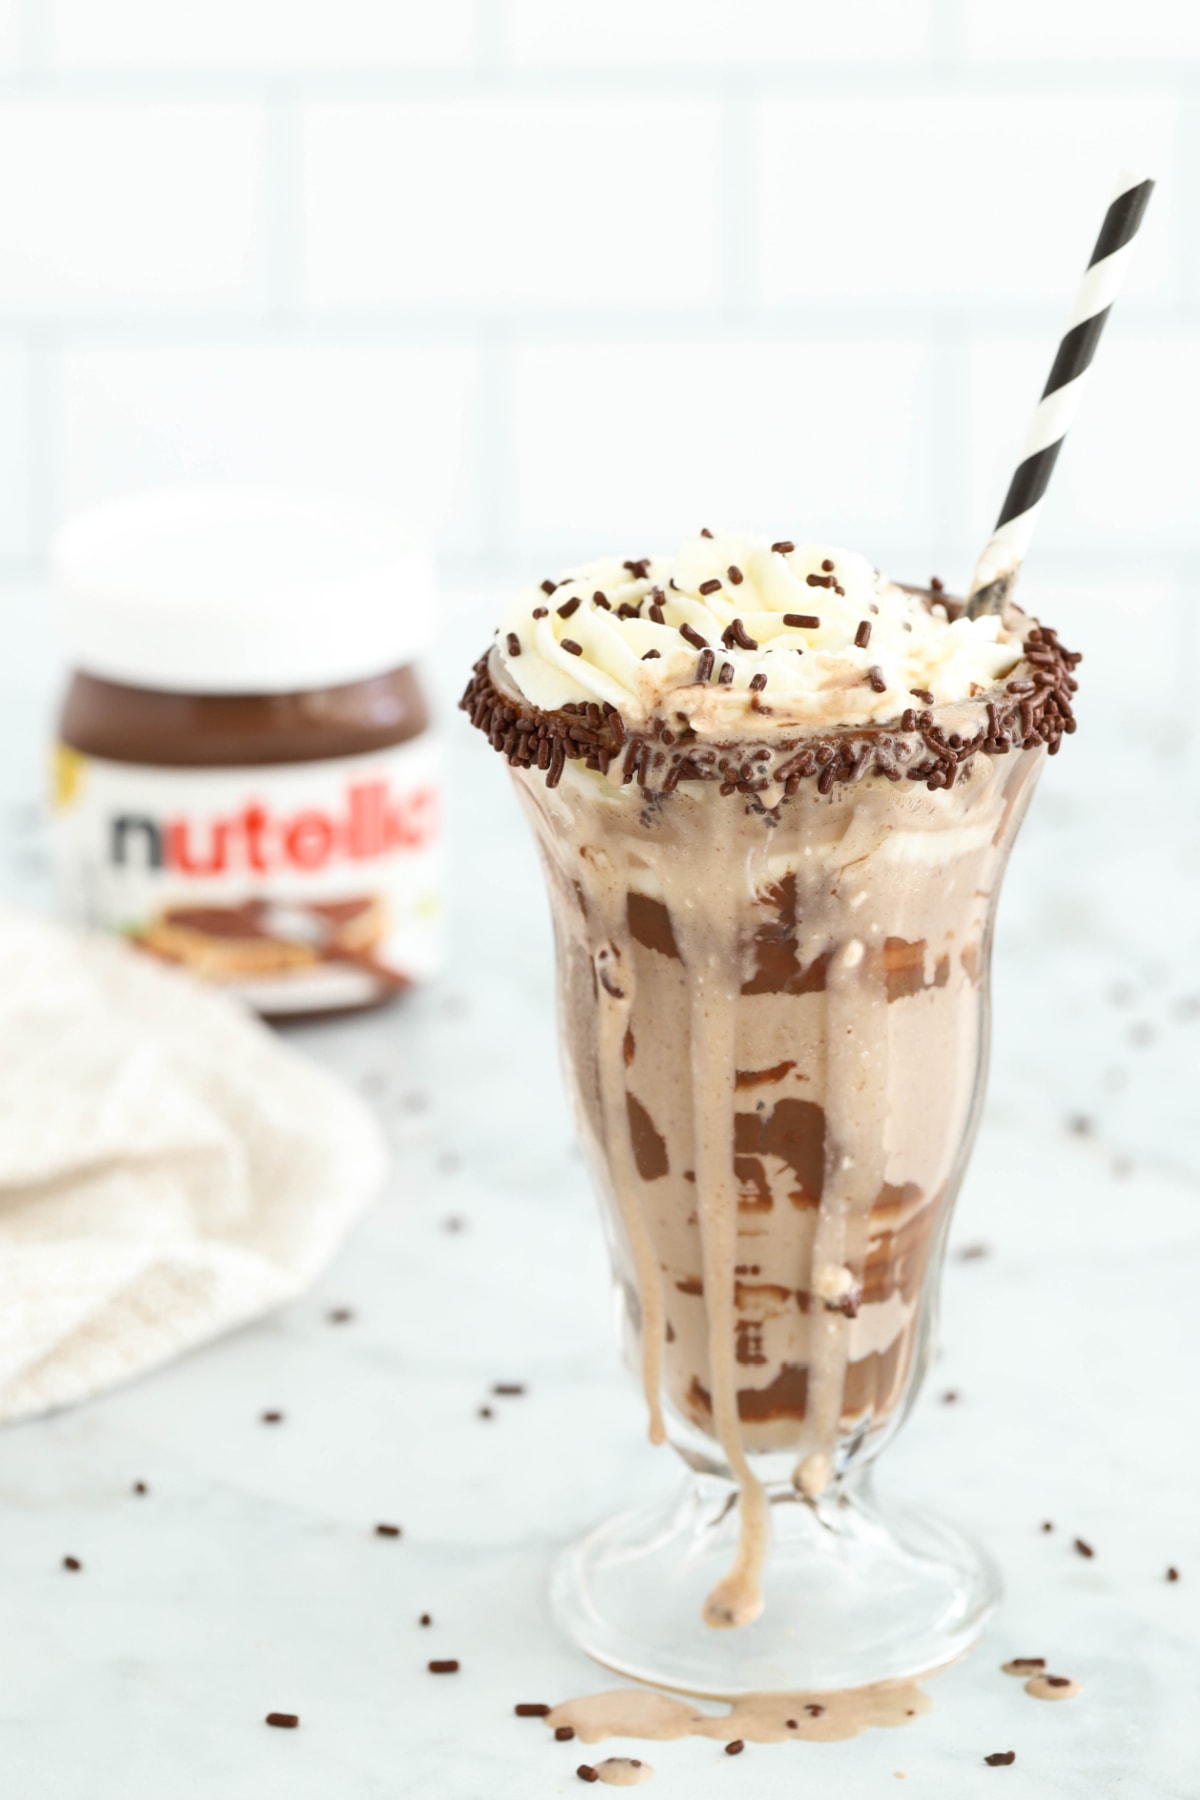 Easy Nutella milkshake with Nutella jar in background